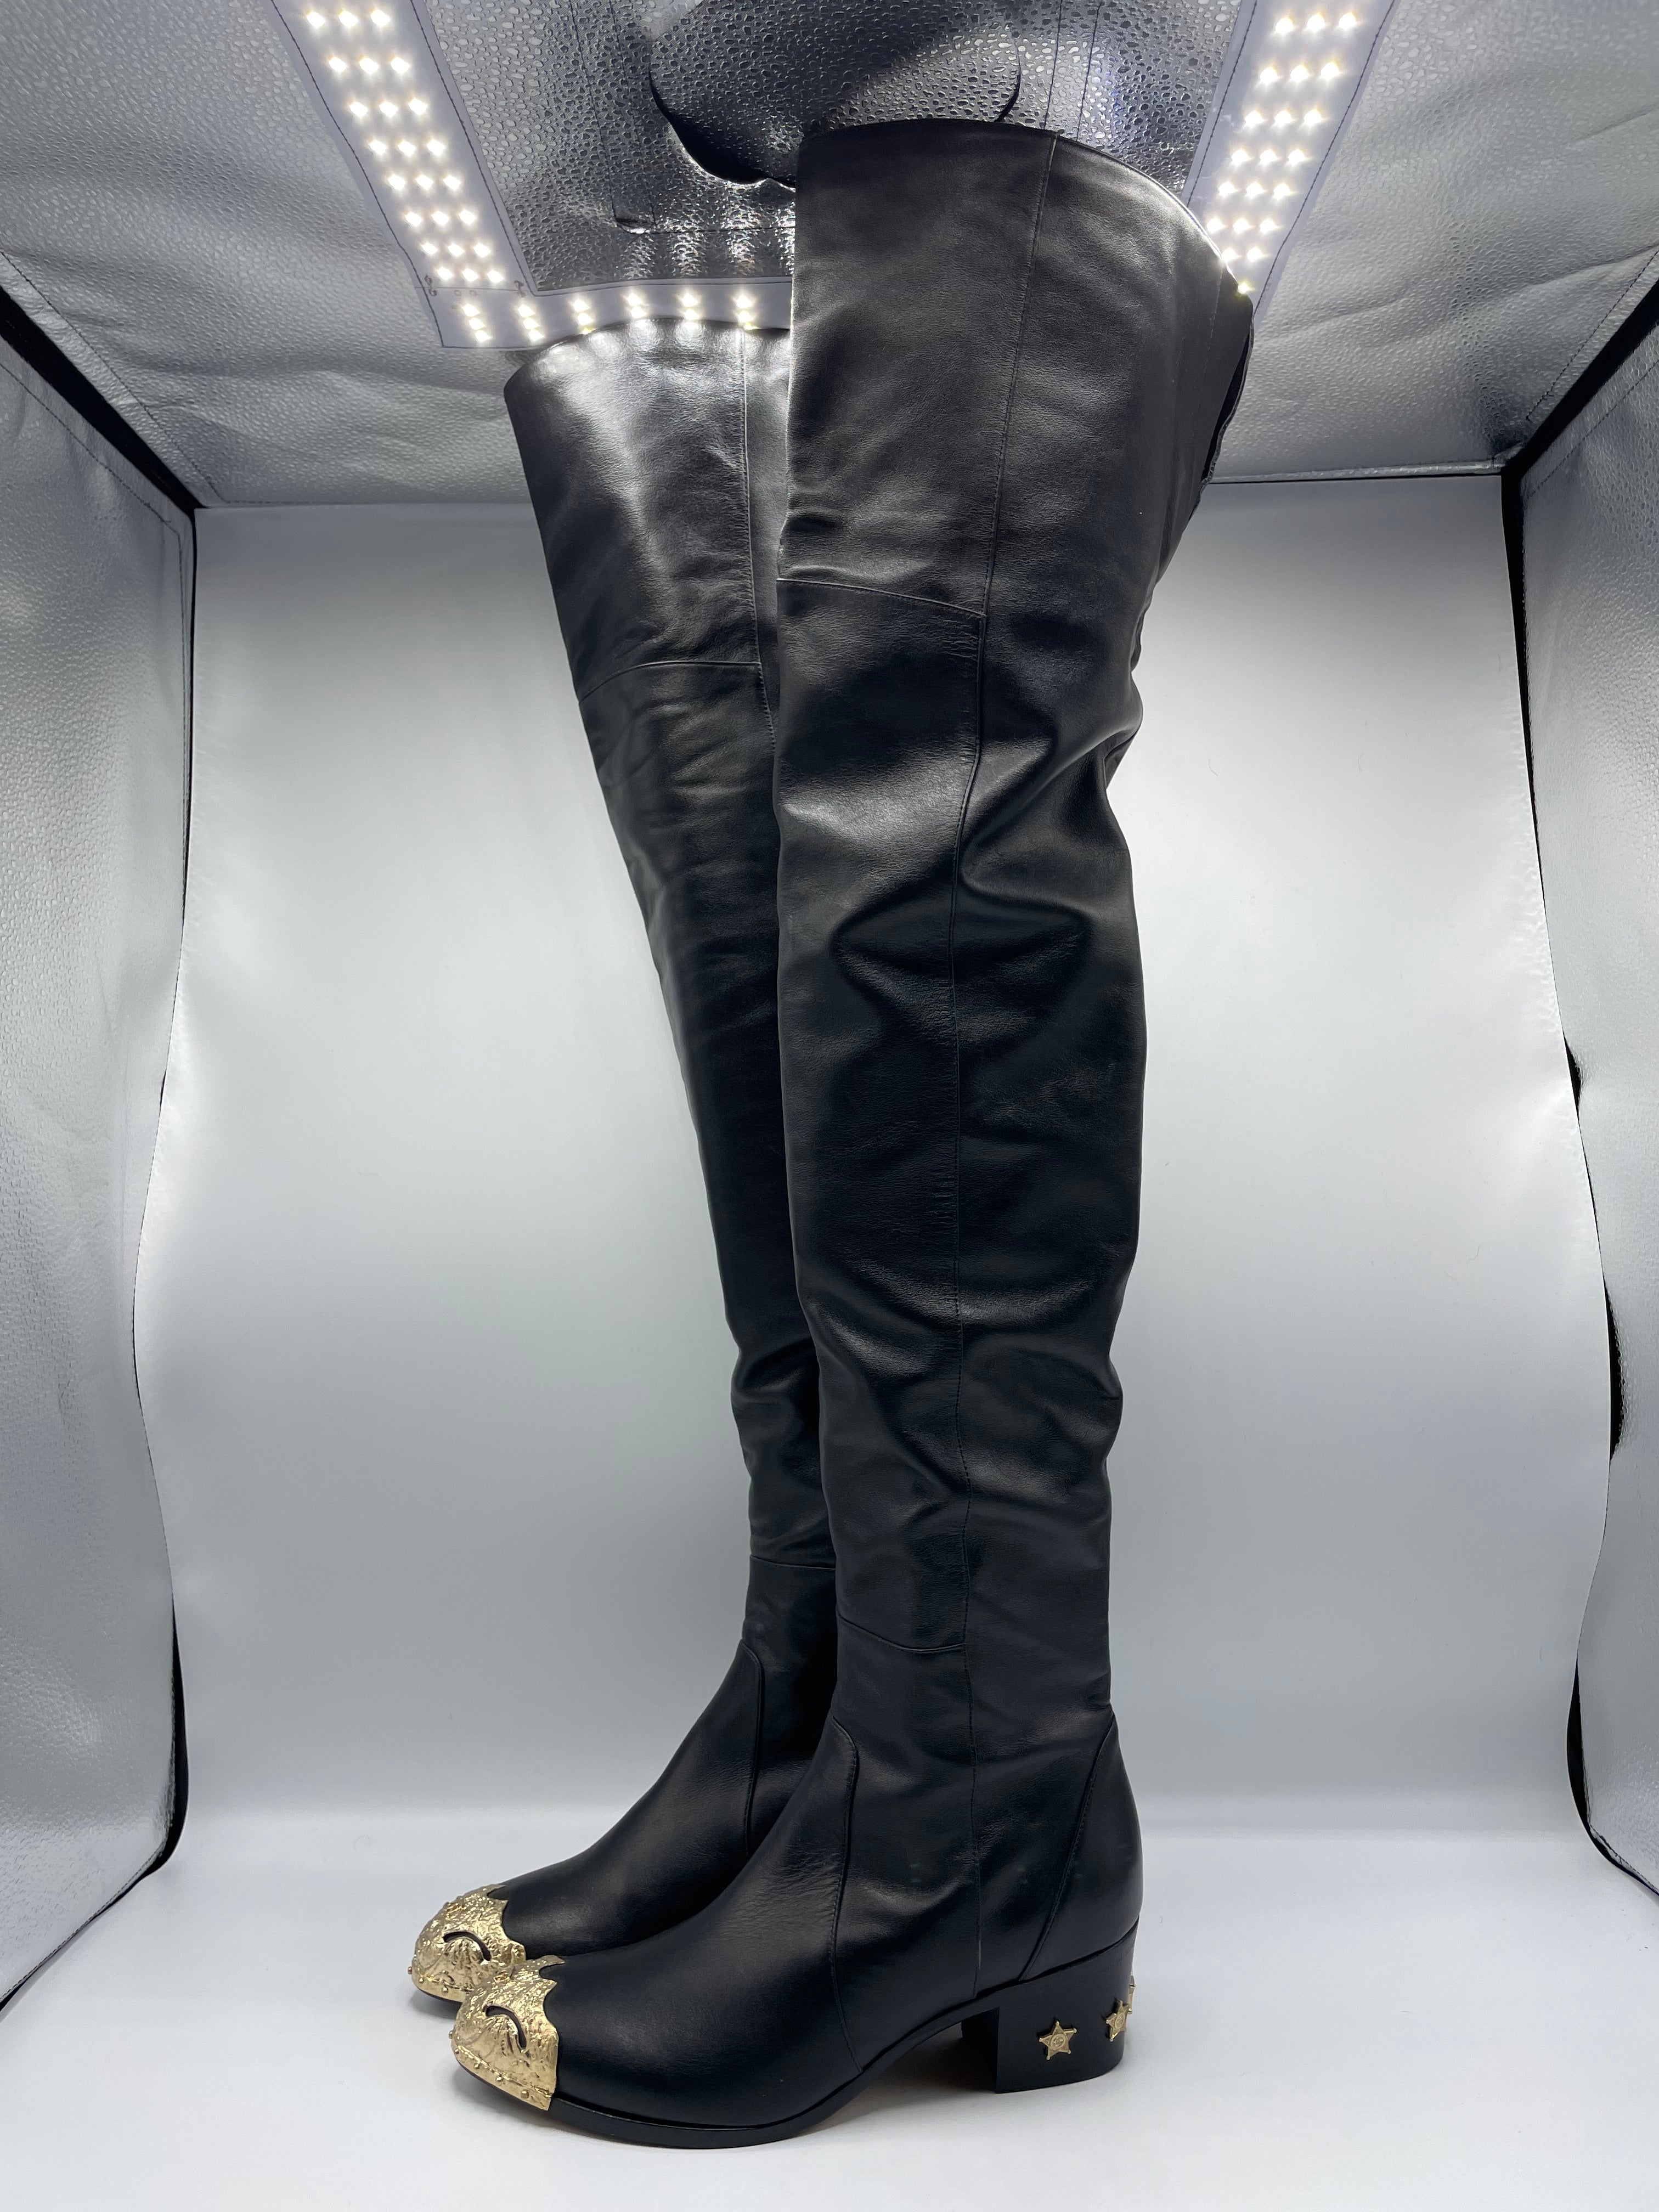 Chanel Oberschenkel Stiefel Größe 40. Diese schwarzen Chanel-Stiefel aus Leder mit Goldbeschlägen sind zeitlos und in ausgezeichnetem Zustand. Die Sohle wurde noch nie benutzt und ist in einem fantastischen Zustand.Paris-Dallas Collection'S